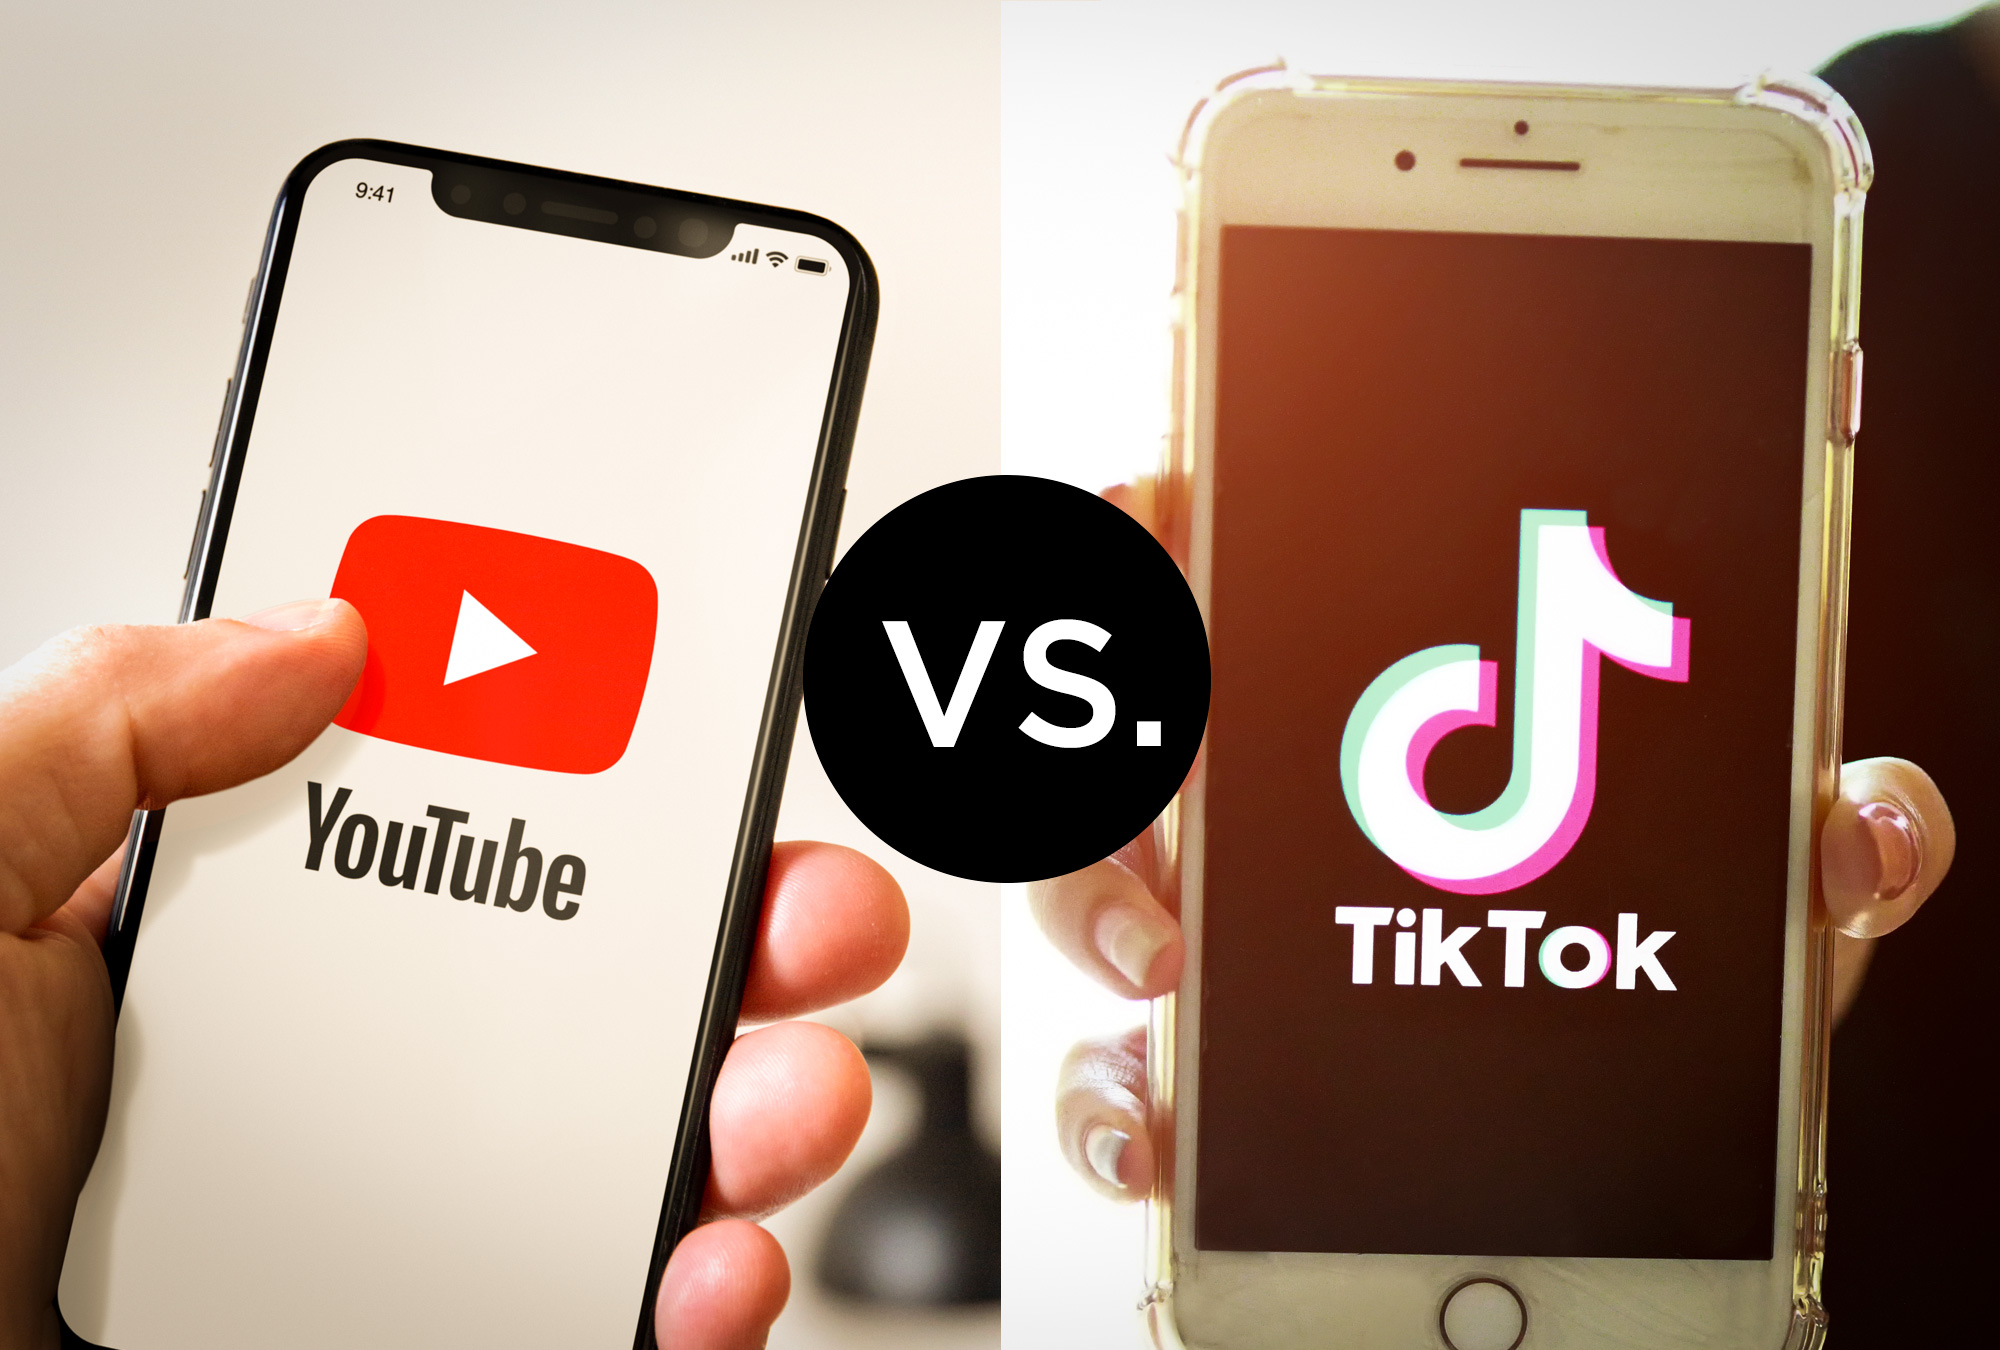 Youtube vs. TikTok